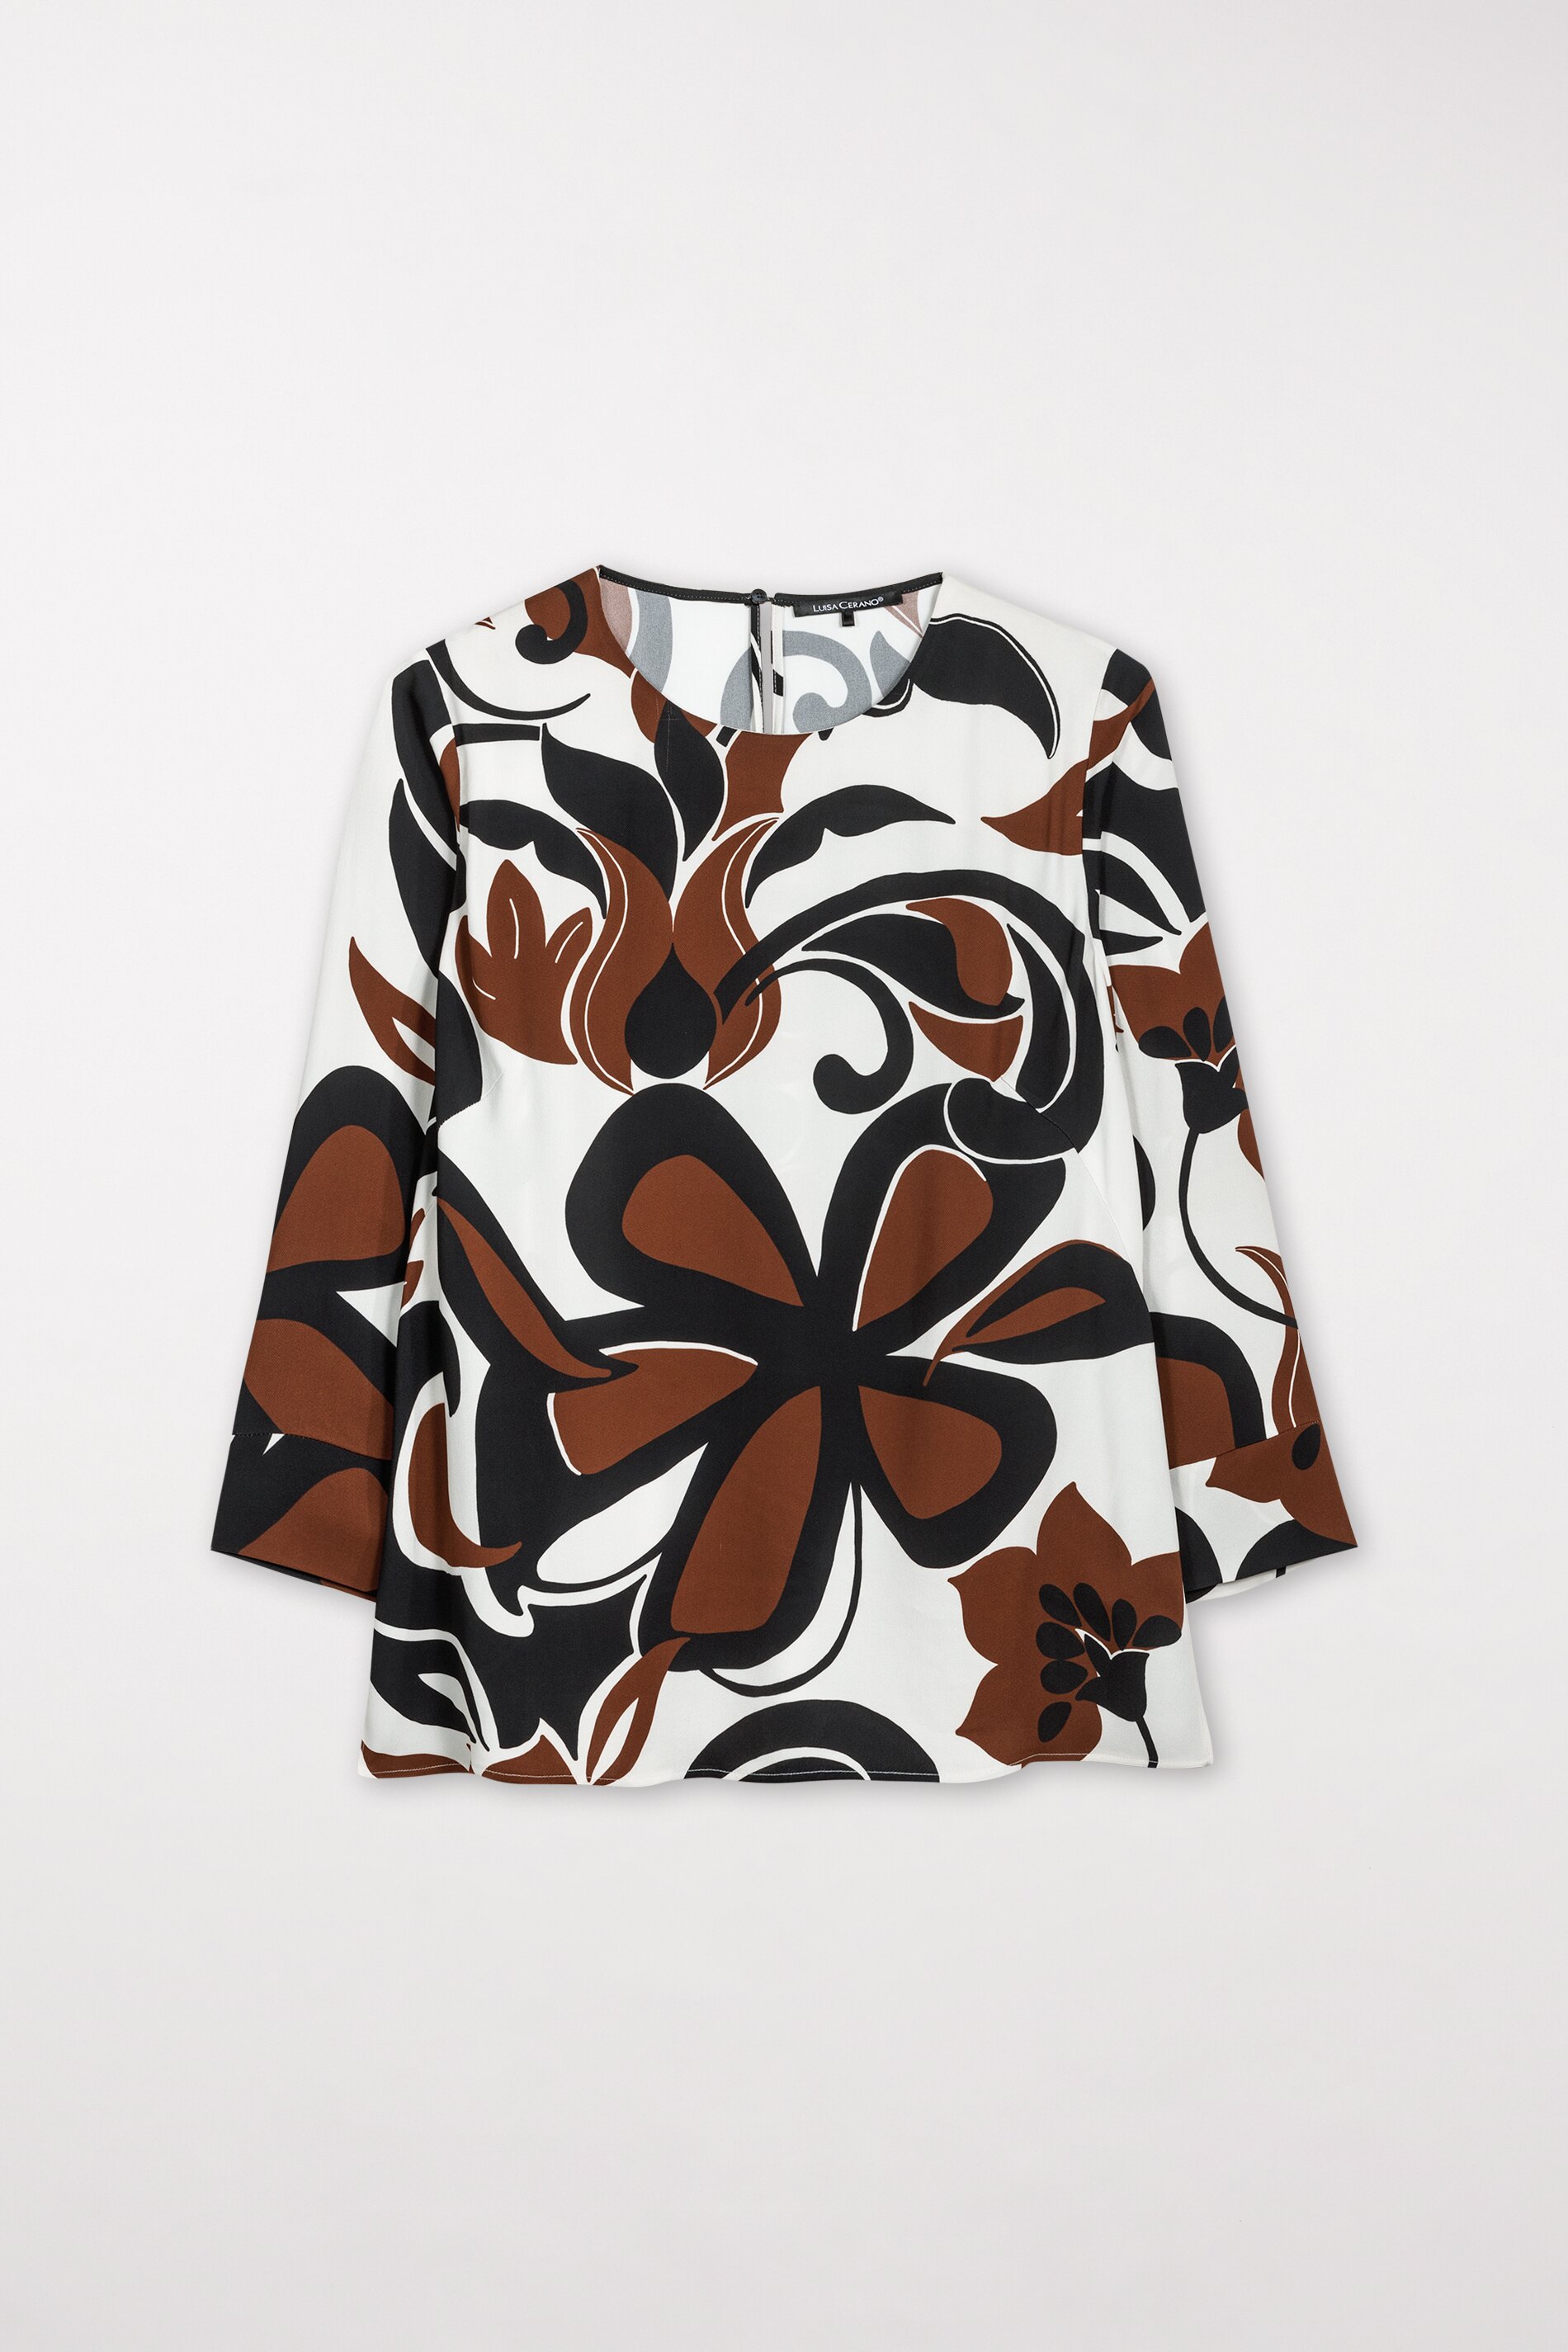 LUISA CERANO Bluse mit Flower-Print 10713089 kaufen | WÖHRL